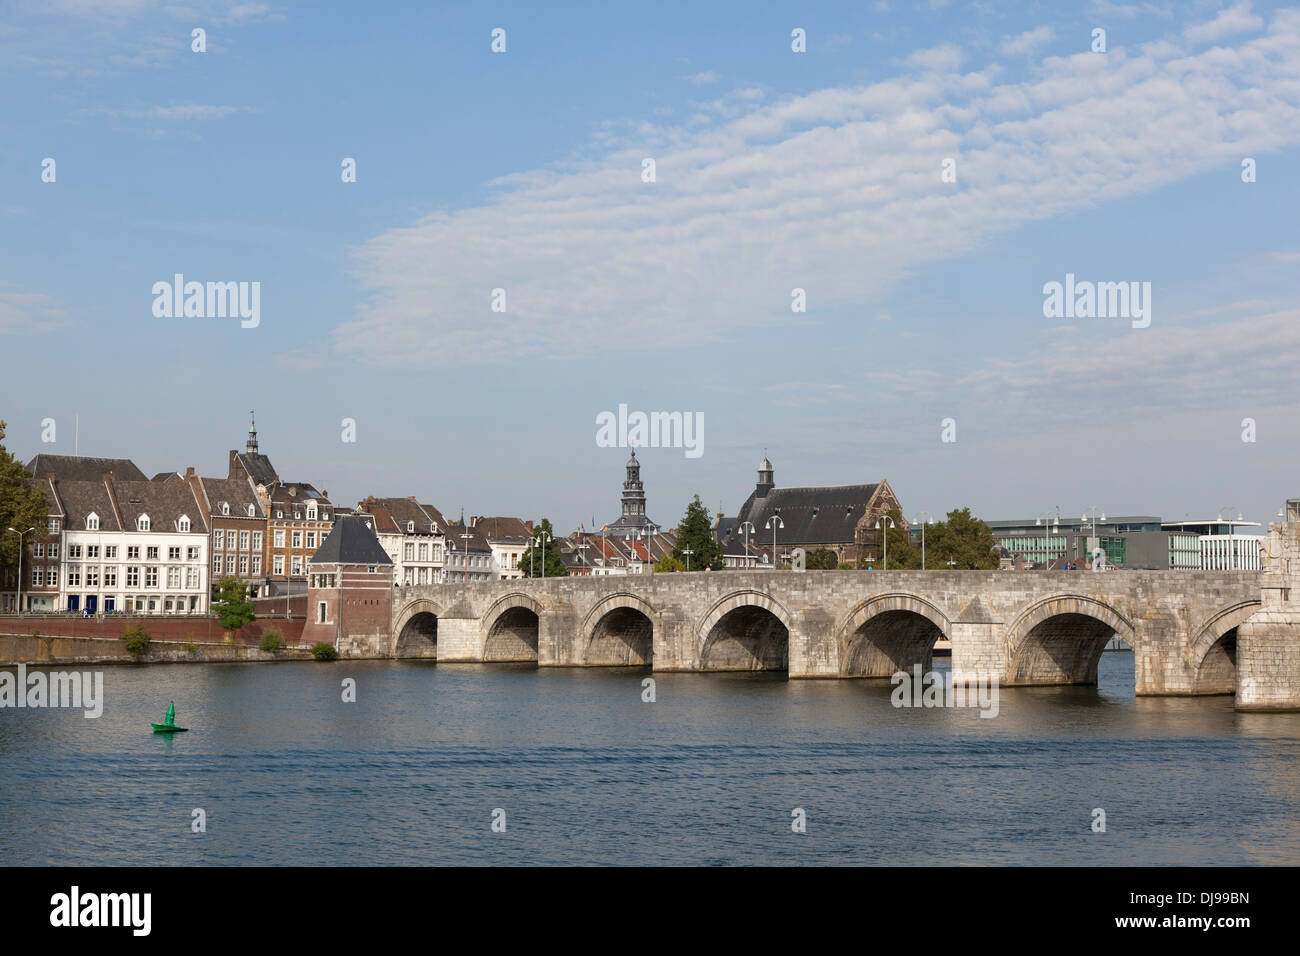 Sint Servaas Bridge over the Meuse, Maastricht, Netherlands Stock Photo